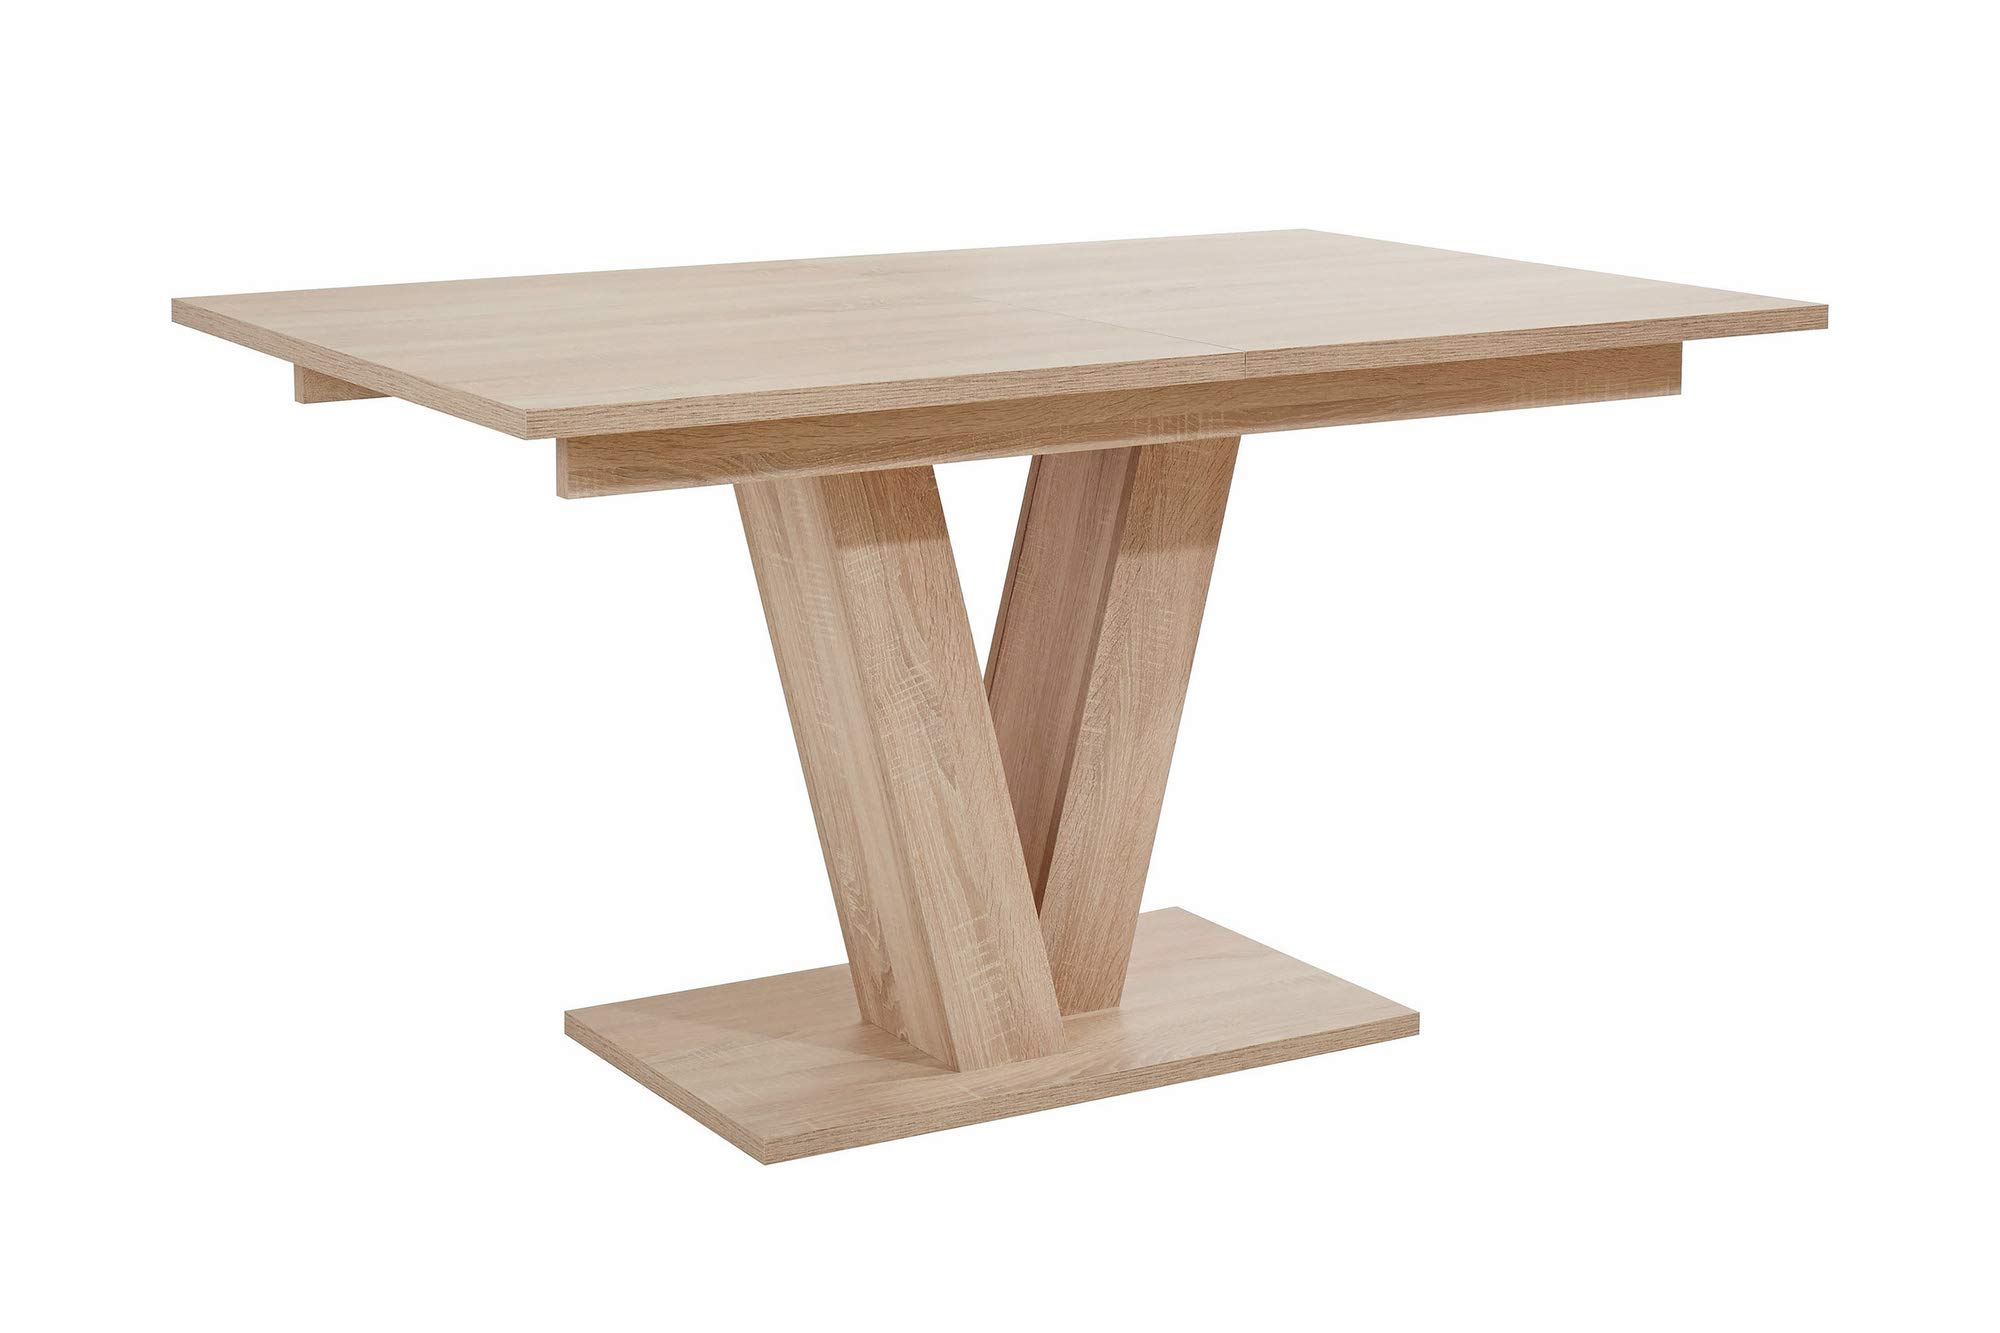 HOMEXPERTS Esszimmertisch mit Auszug DAVID / Ess-Tisch in Eichen-Holz Optik hell-braun / Säulentisch 140cm / Synchron-Auszug ausziehbar auf 180 cm / Auszugstisch / 140-180 x 90 x 75cm (LxBxH)